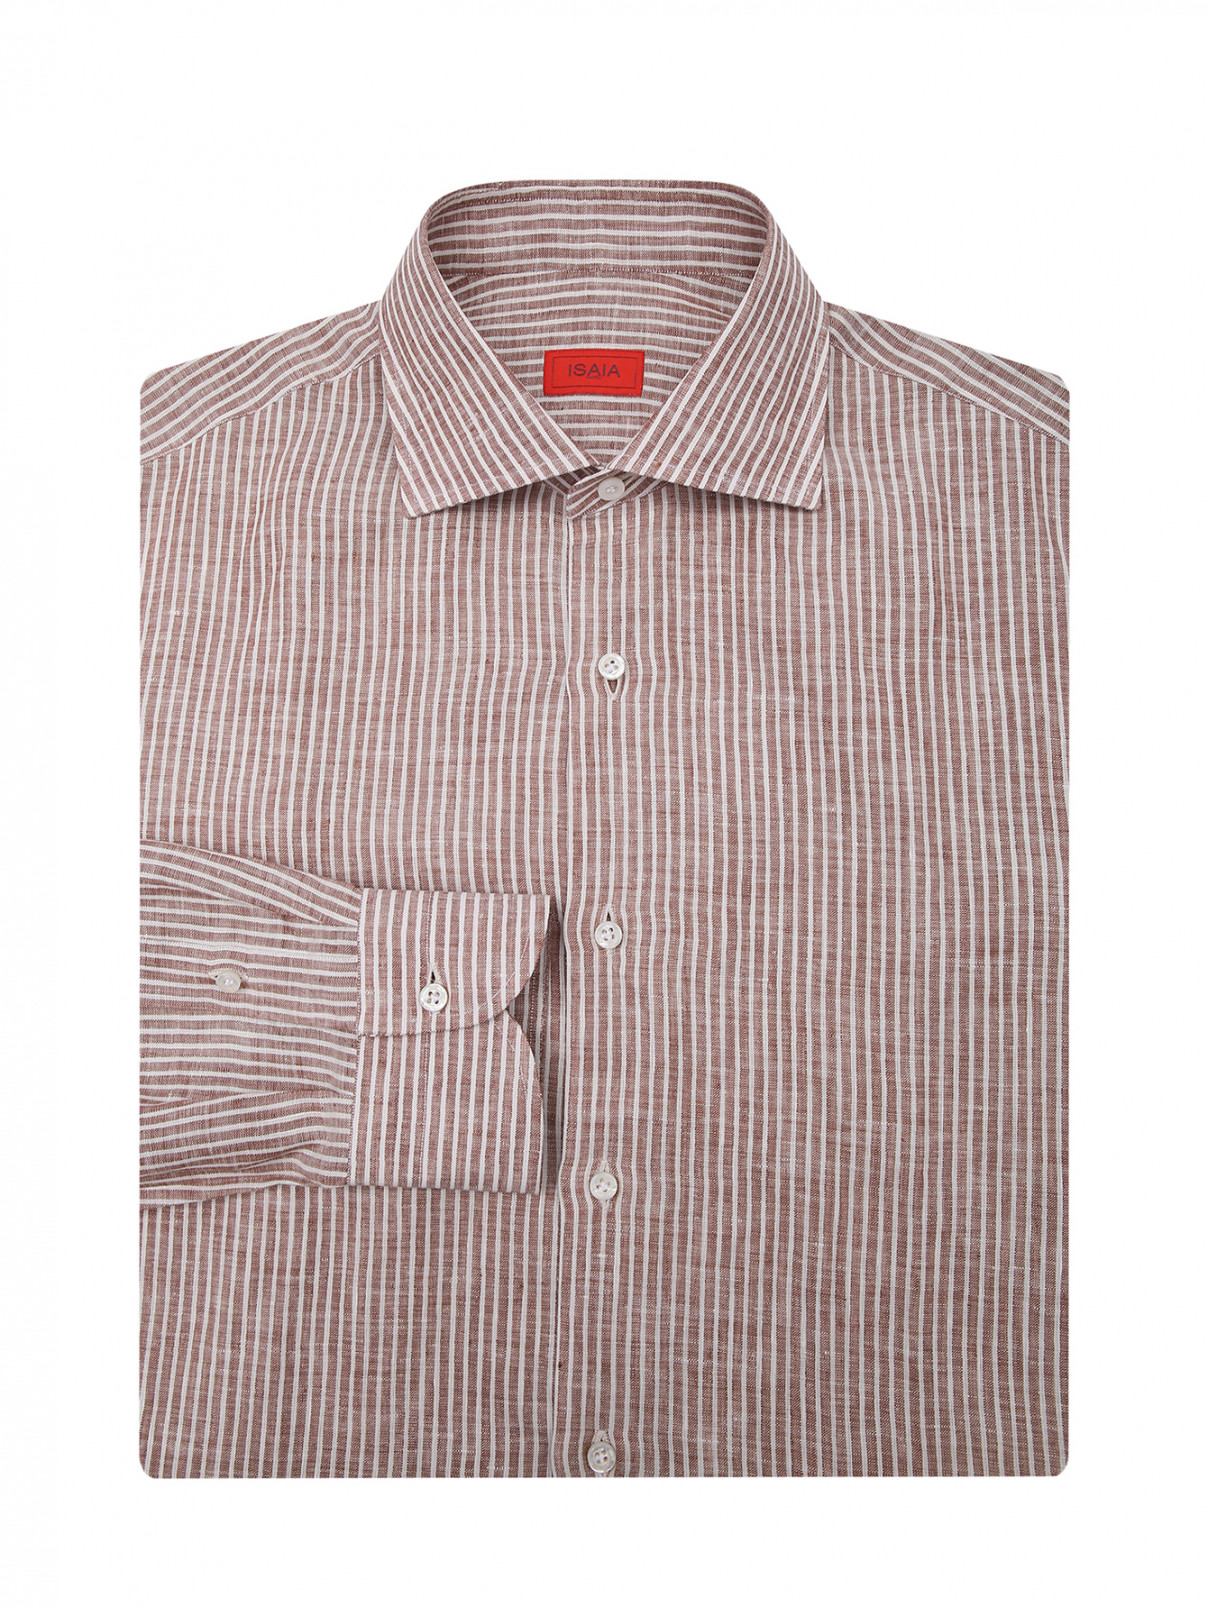 Рубашка из льна с узором полоска Isaia  –  Общий вид  – Цвет:  Коричневый